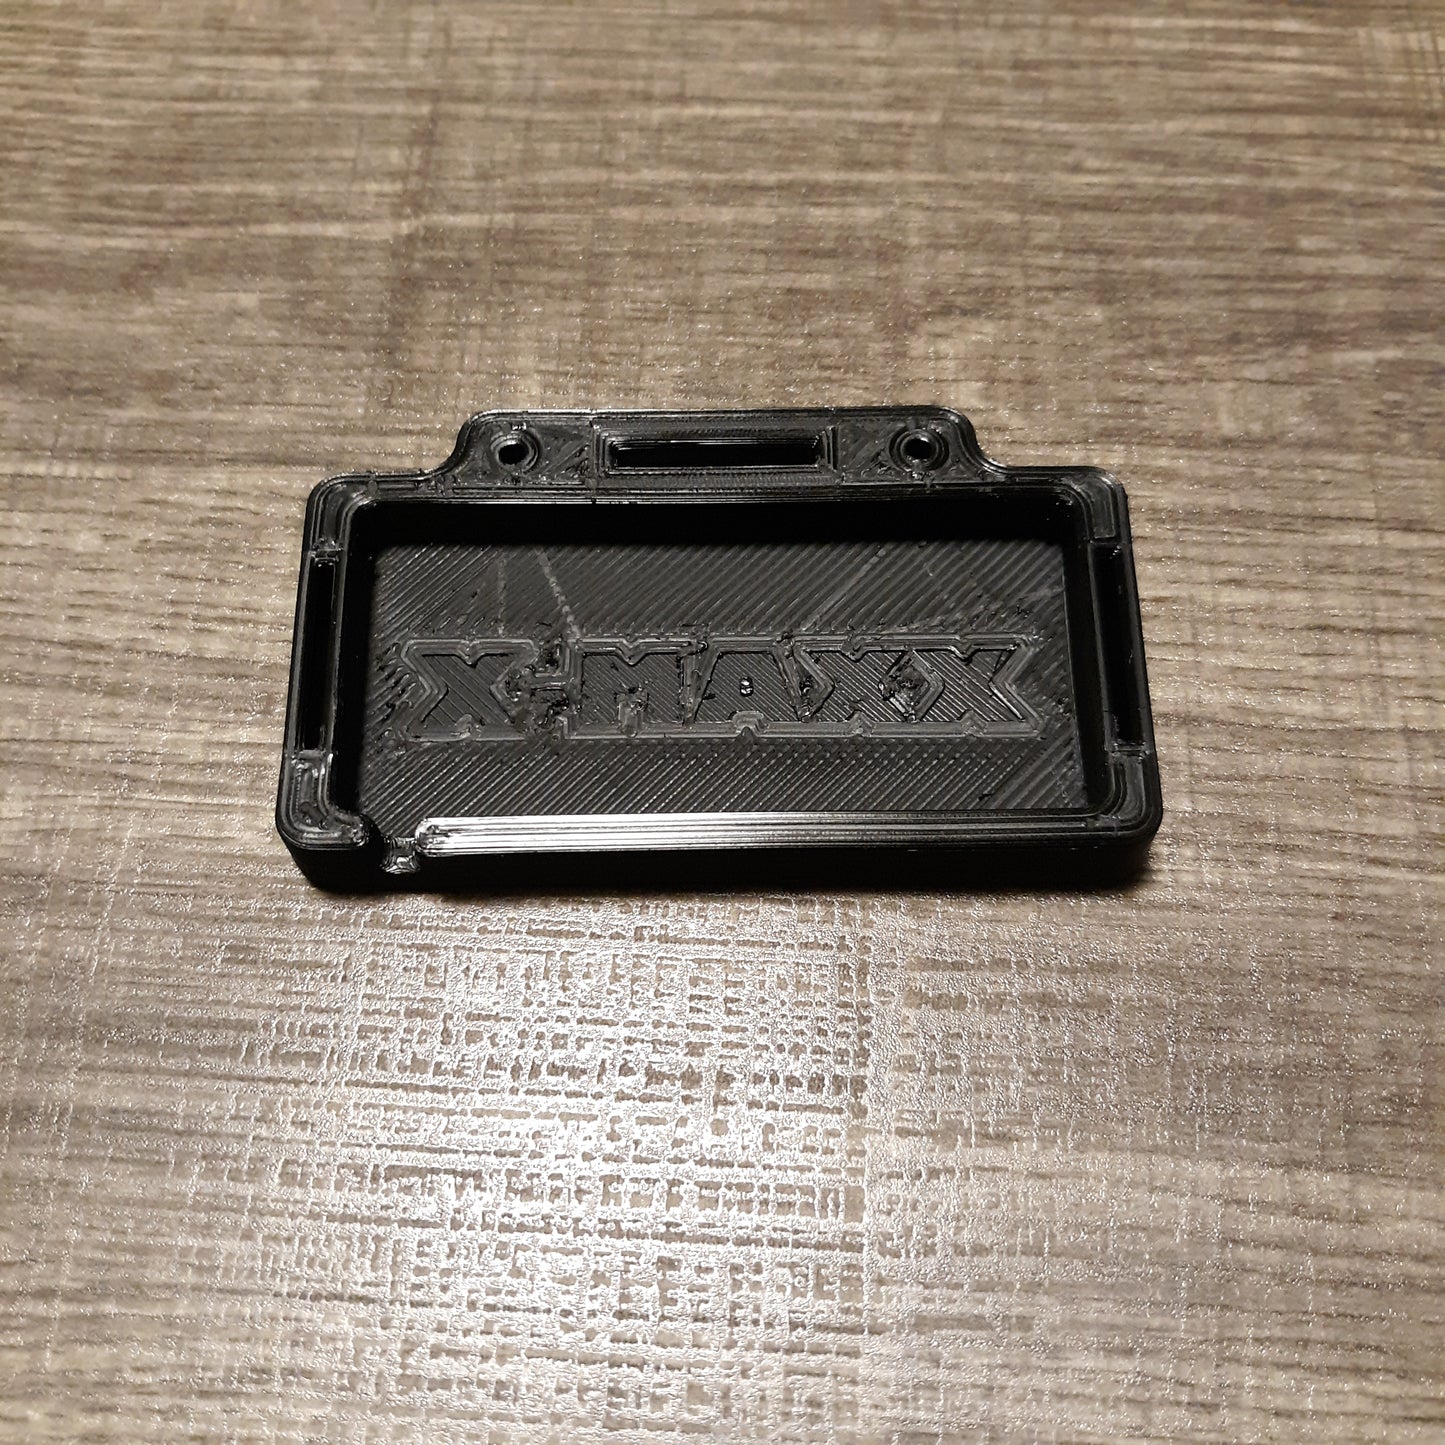 Xmaxx fan battery tray